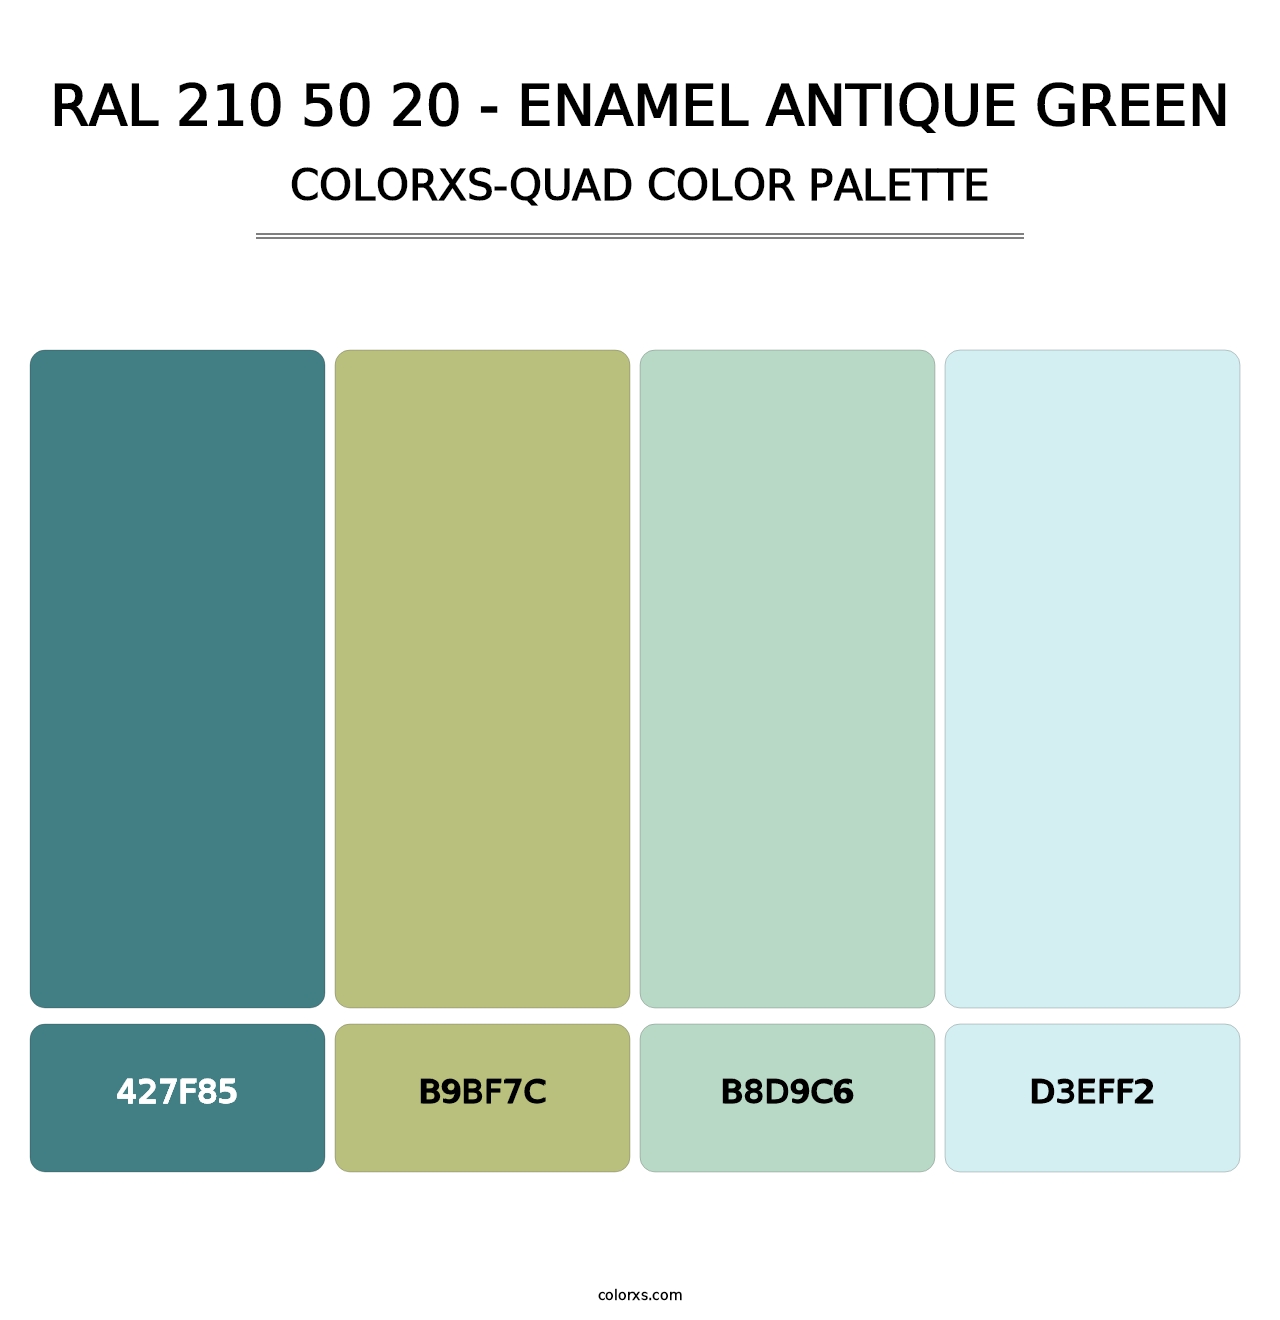 RAL 210 50 20 - Enamel Antique Green - Colorxs Quad Palette